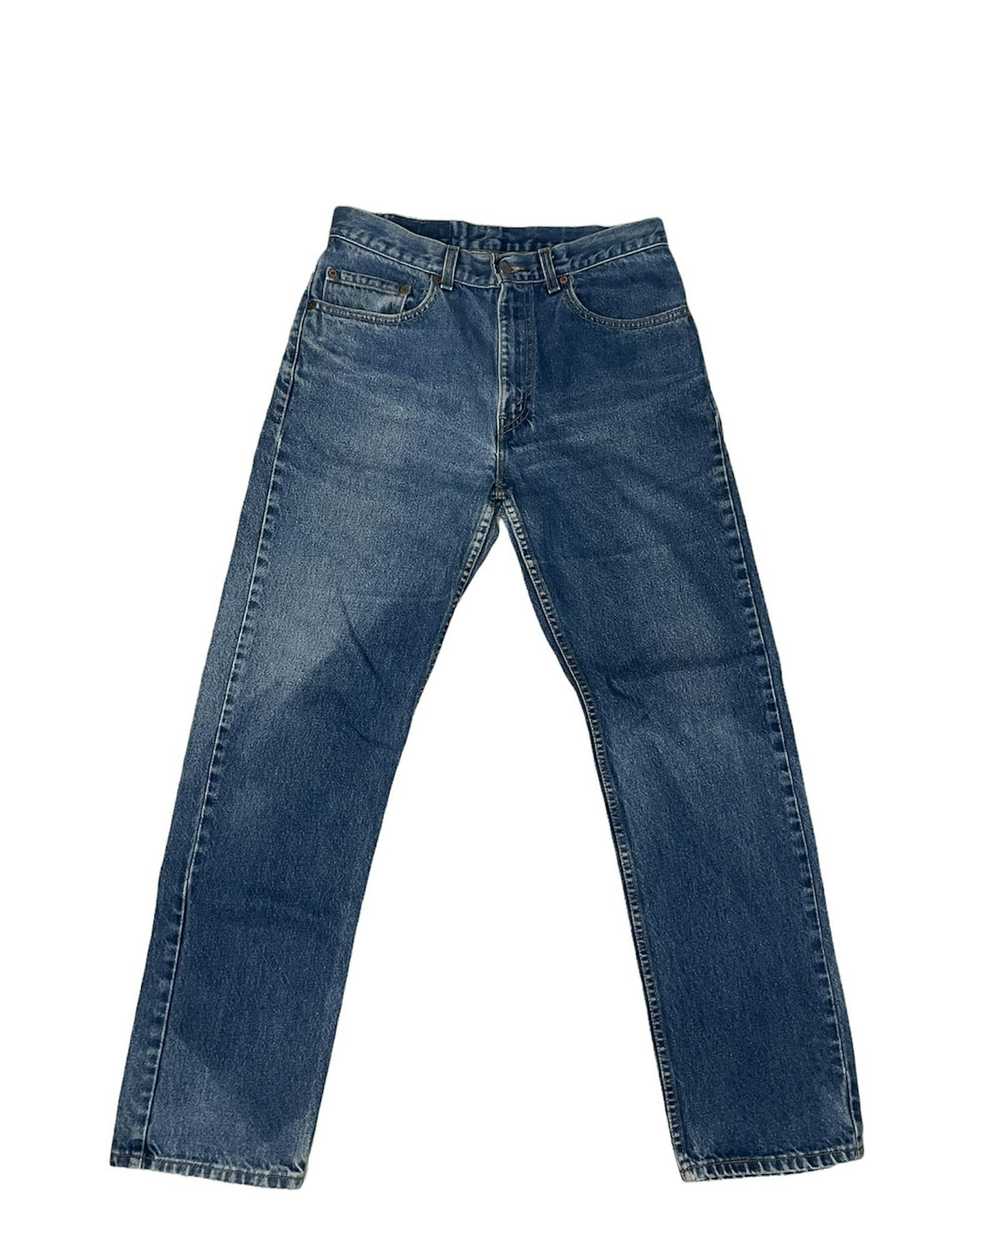 Levi's Vintage Y2k Levis 505 Denim Jeans - image 2